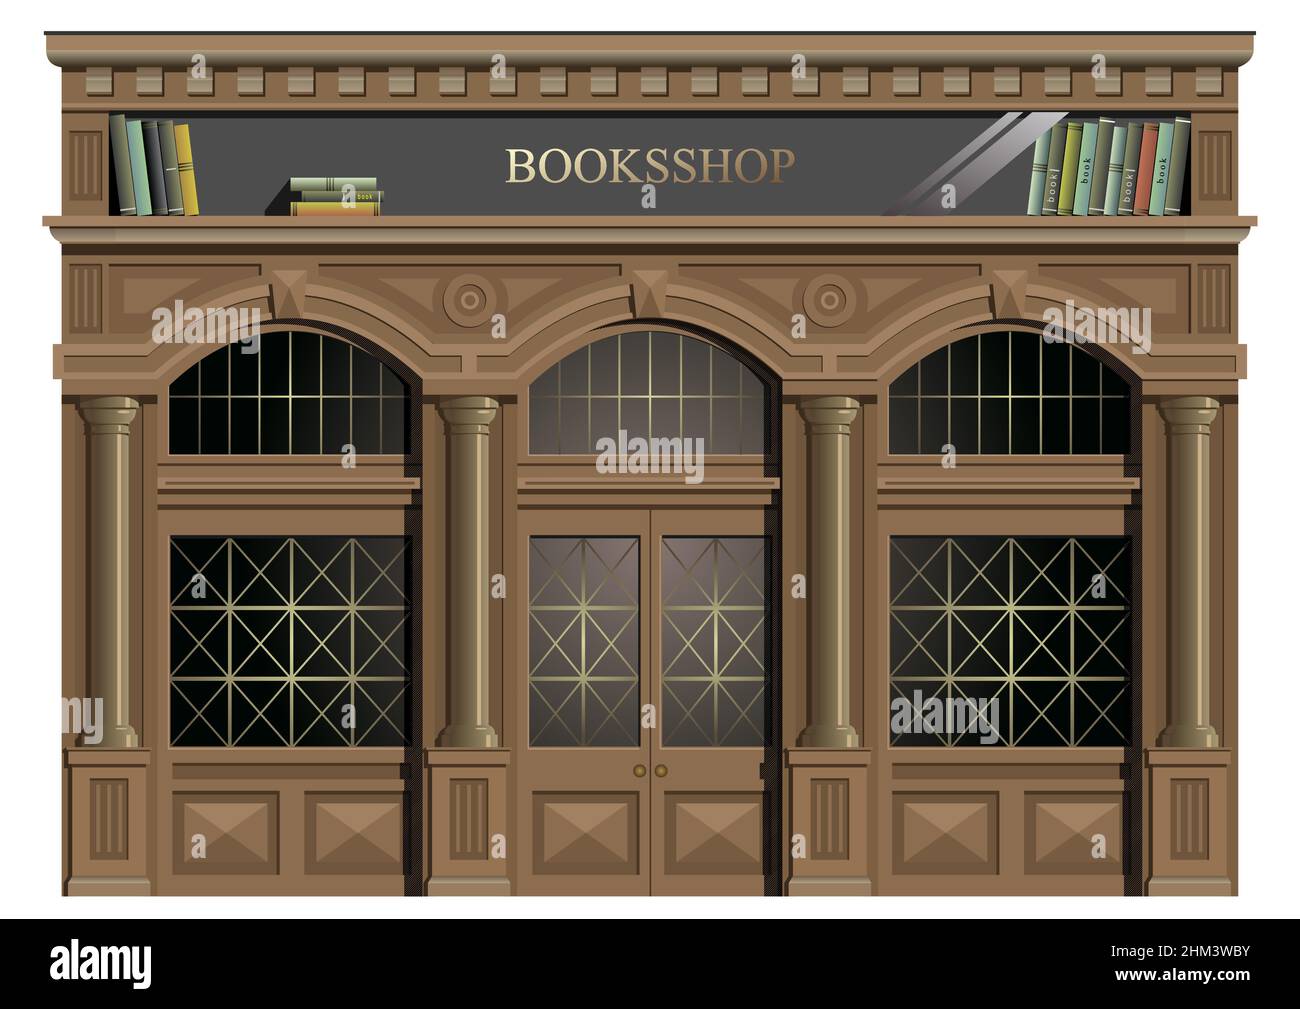 Die Außenfassade aus Holz im klassischen Stil, Fenster, Türen, Ausgang, Buchhandlung oder Bibliothek im Vektor. Stock Vektor